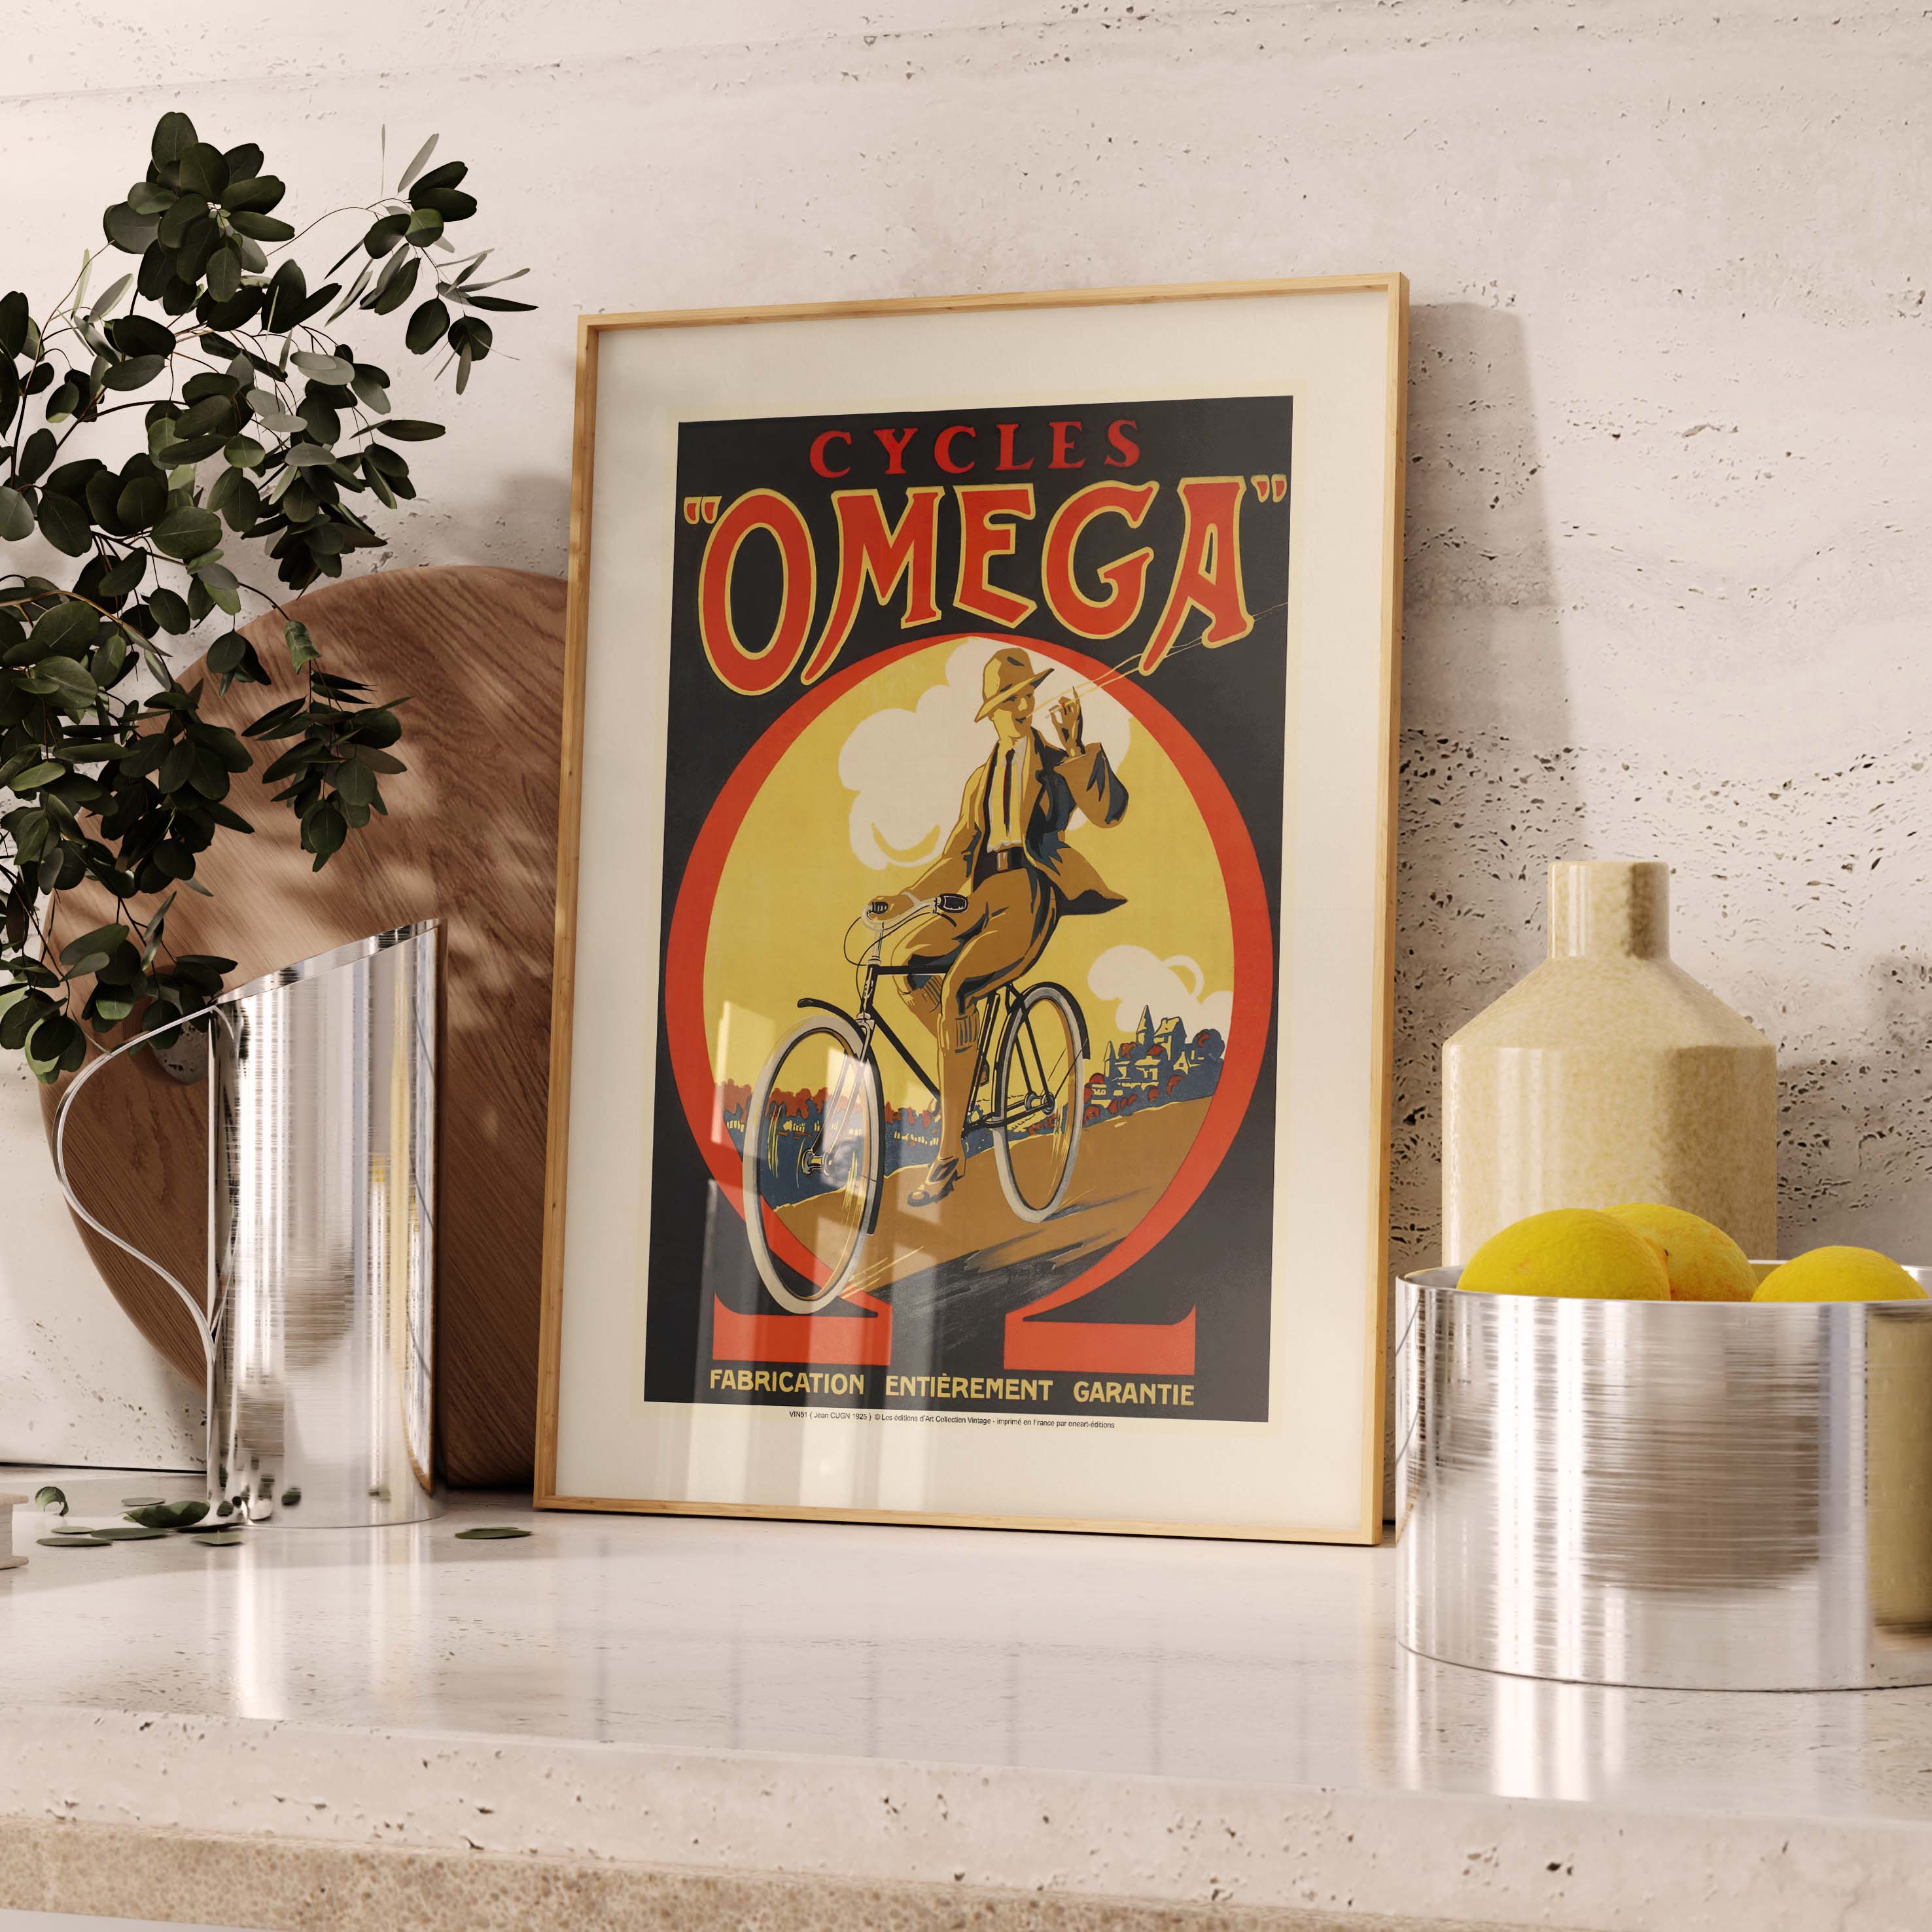 Affiche publicité vintage - Cycles Omega-oneart.fr